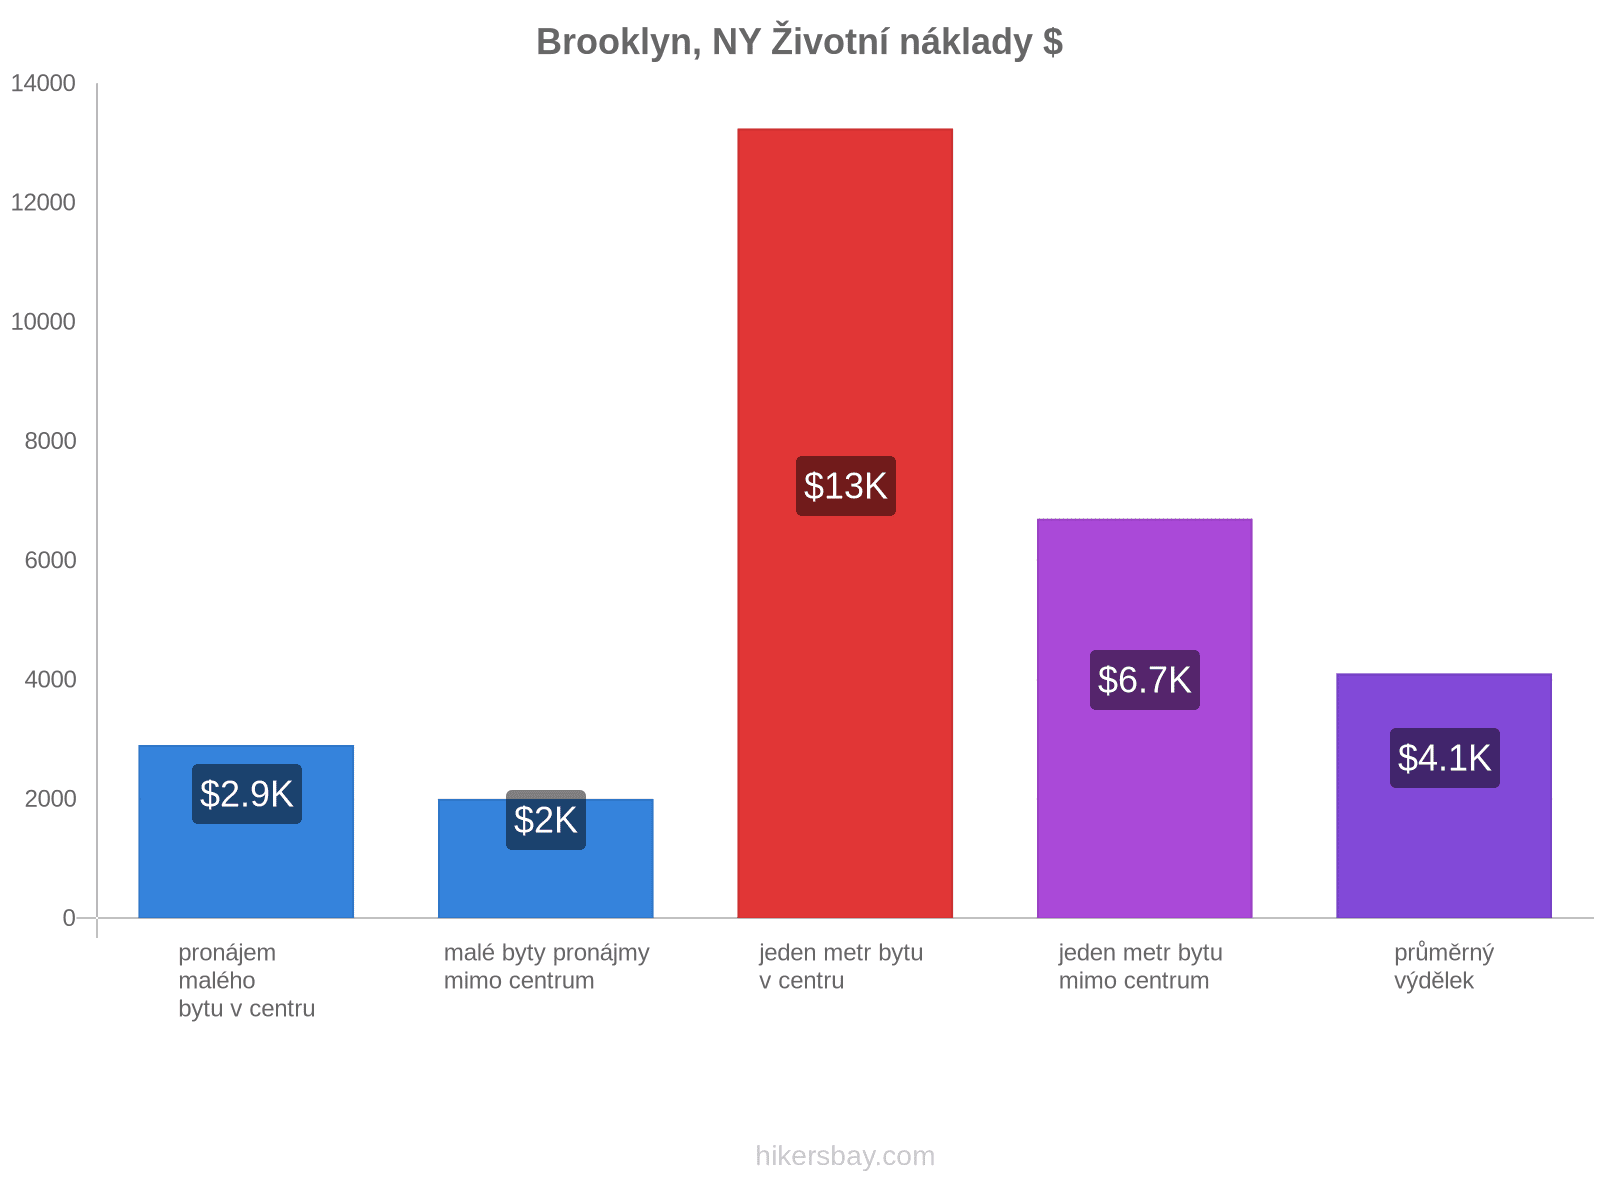 Brooklyn, NY životní náklady hikersbay.com